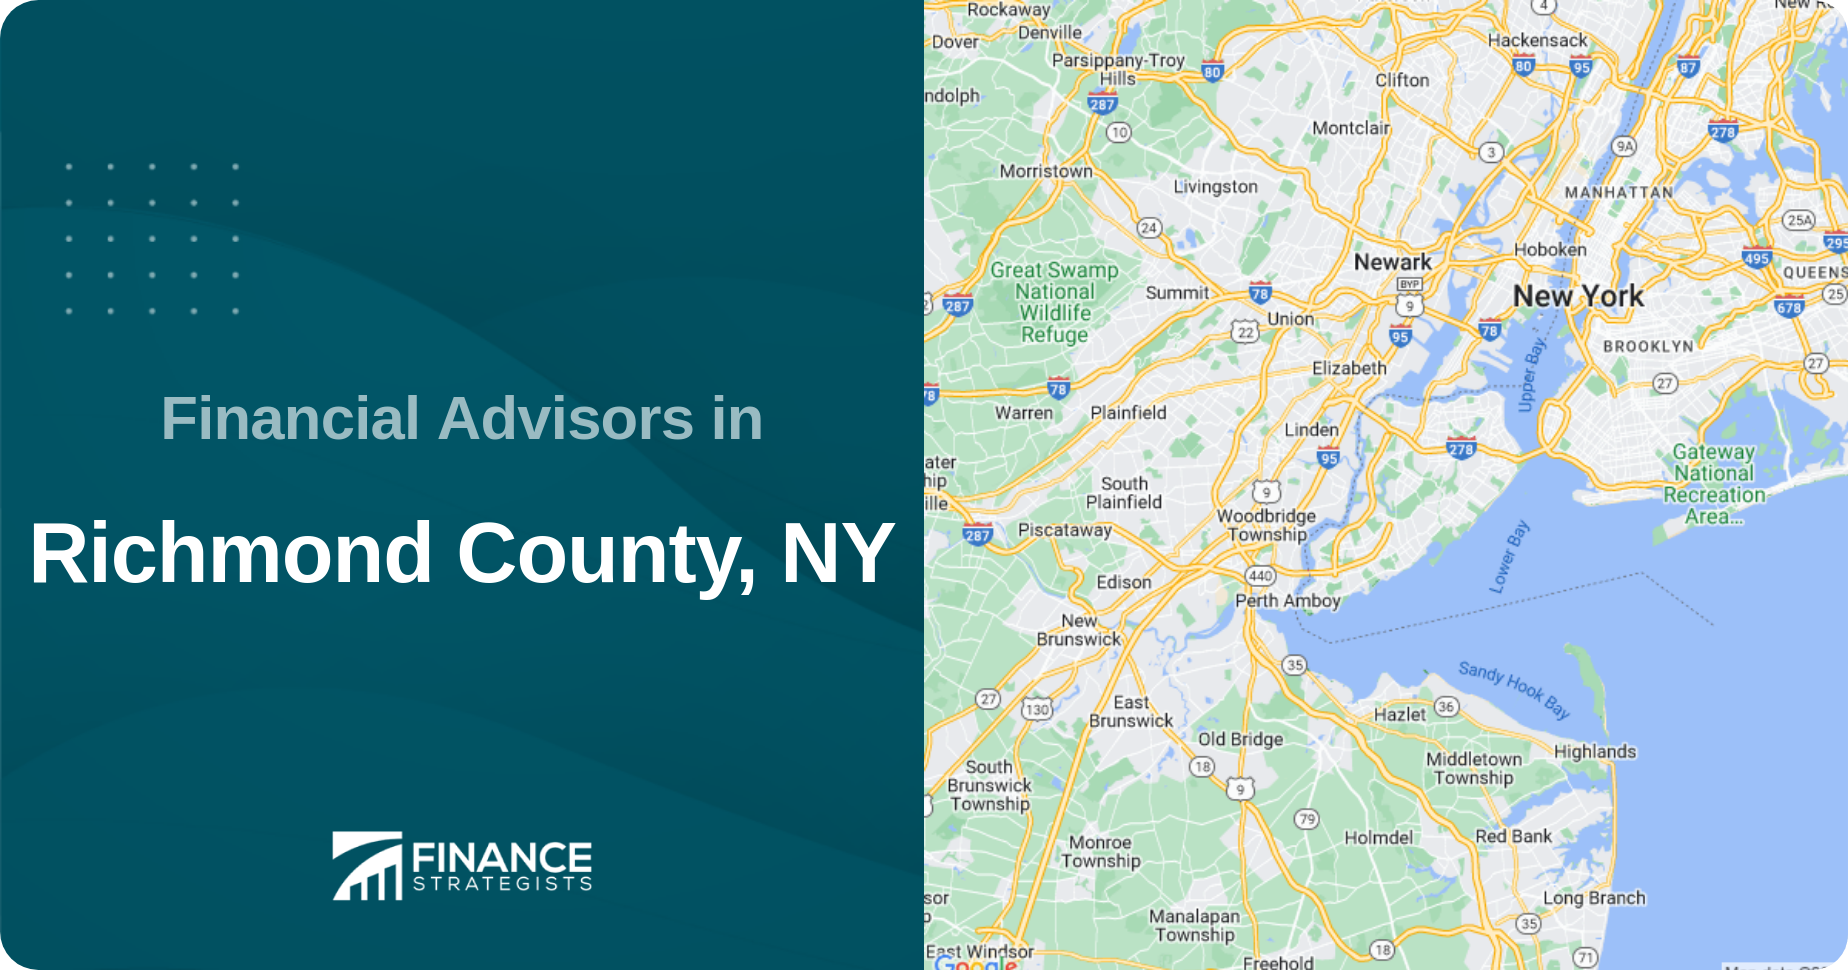 Financial Advisors in Richmond County, NY